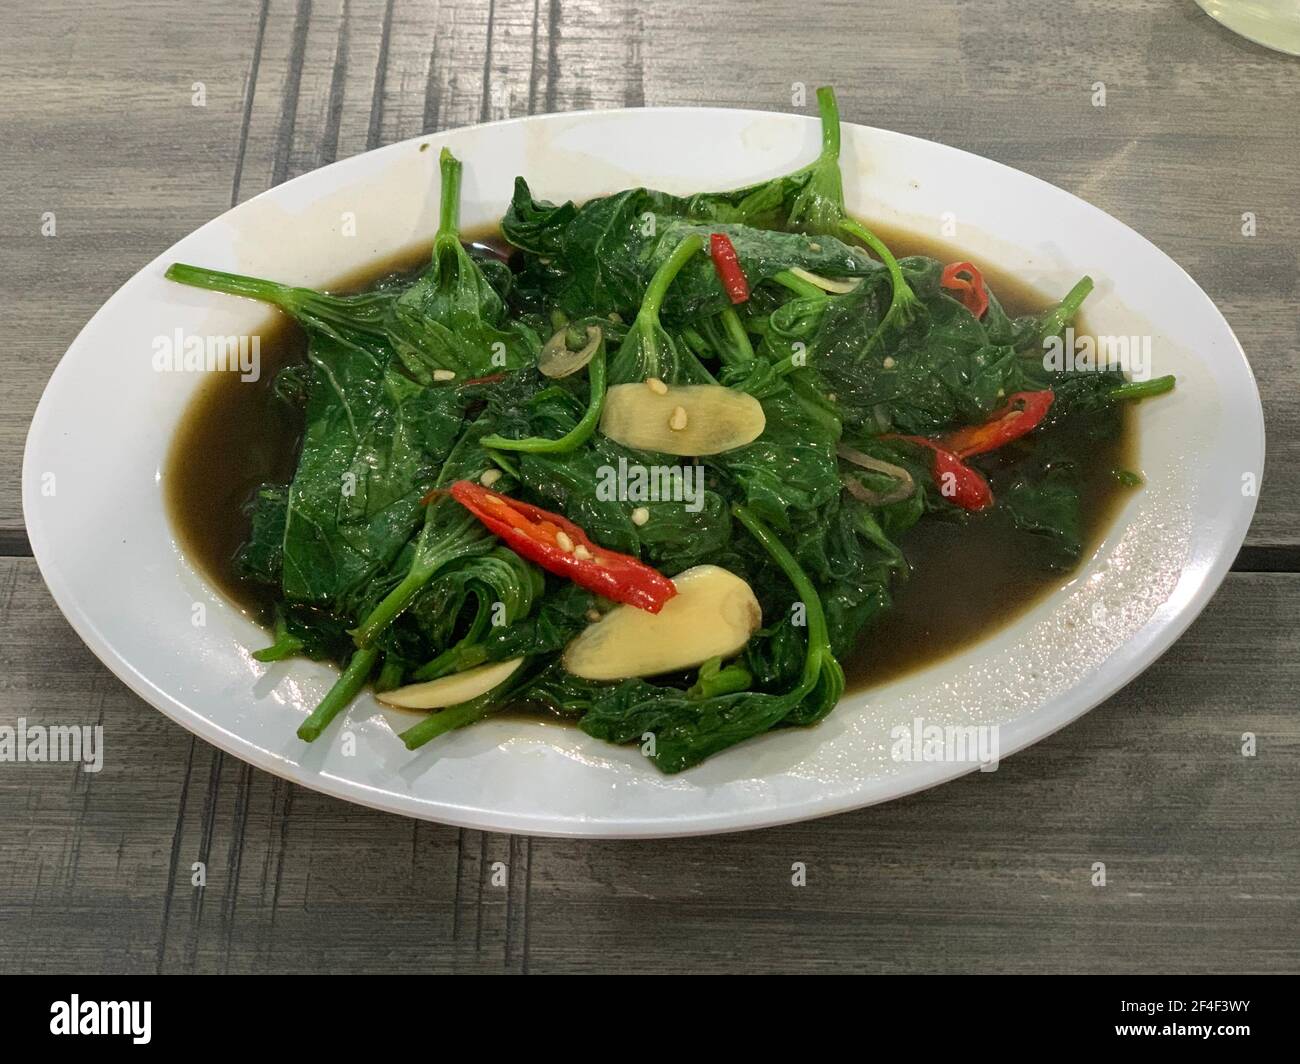 Closeup of cah kangkung, kangkong, or water spinach stirred. Stock Photo